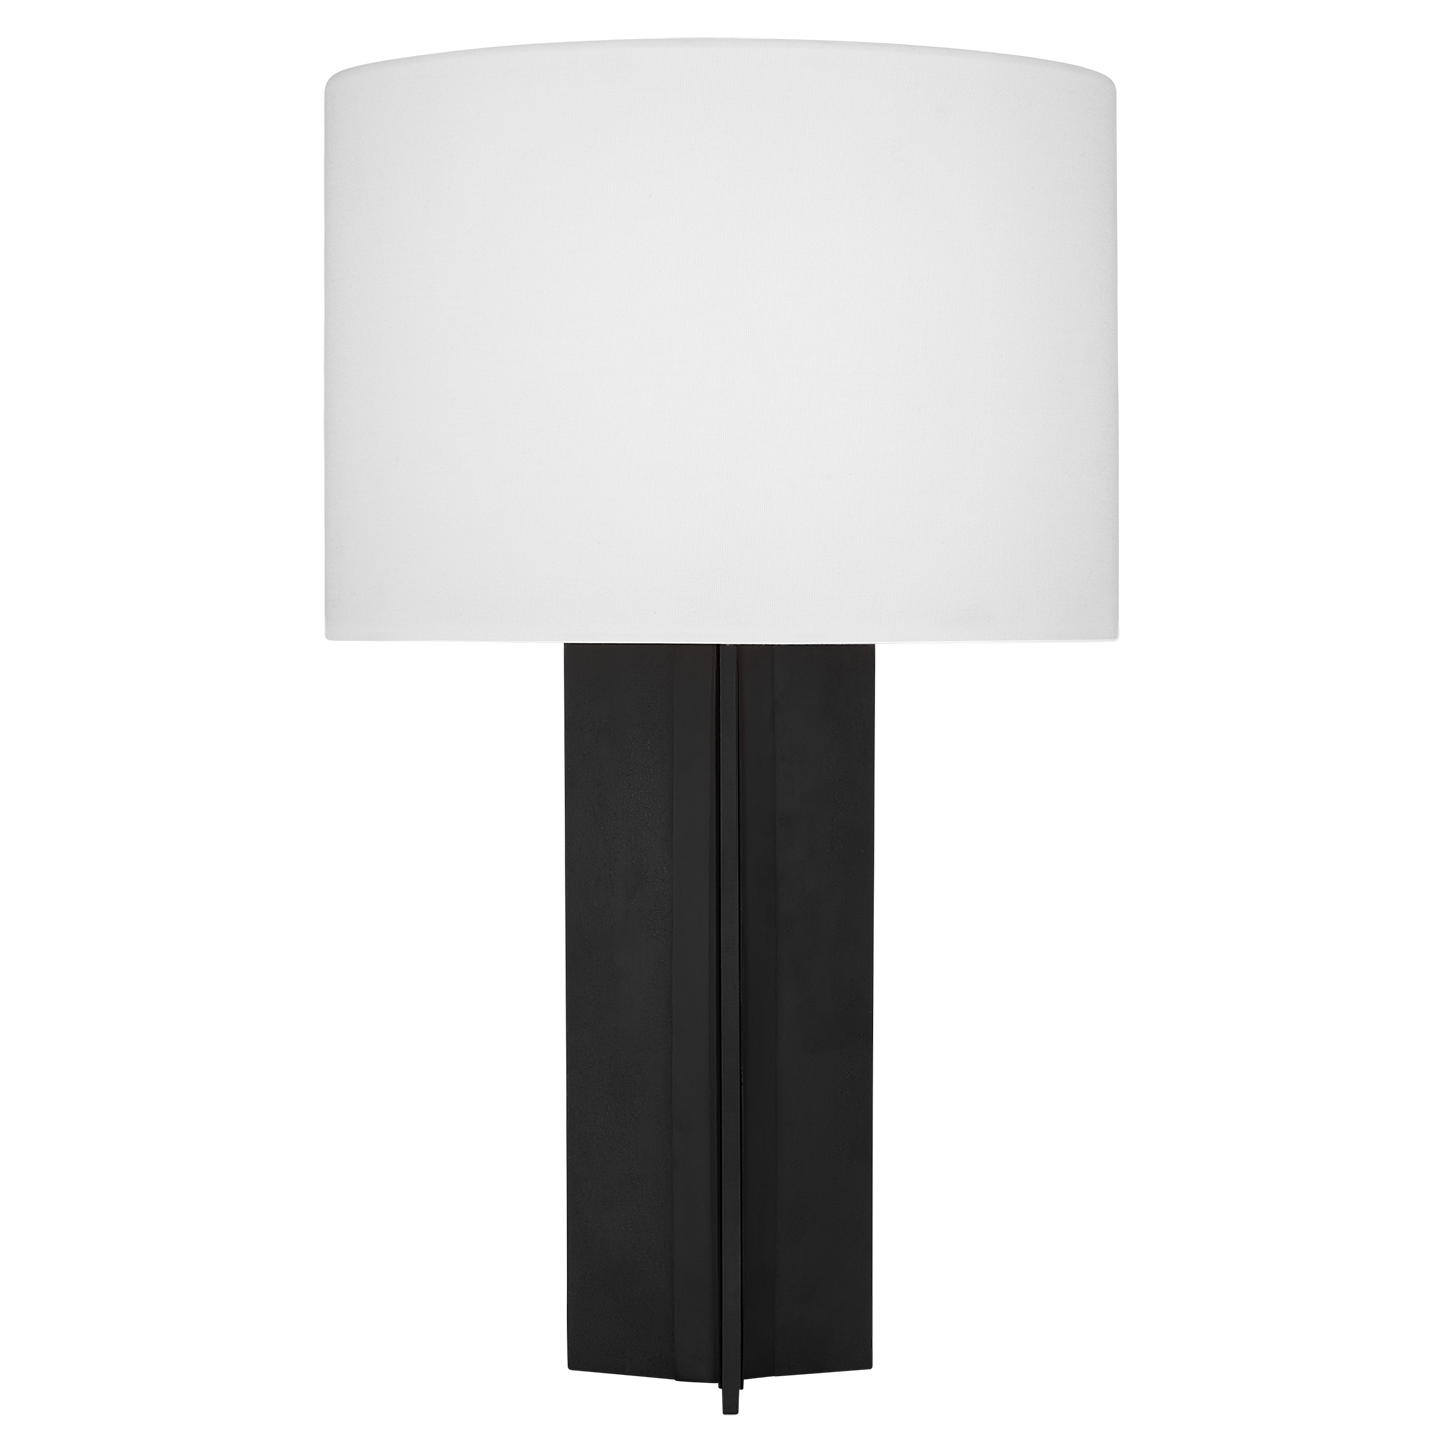 Bennett 1-Light Medium Table Lamp